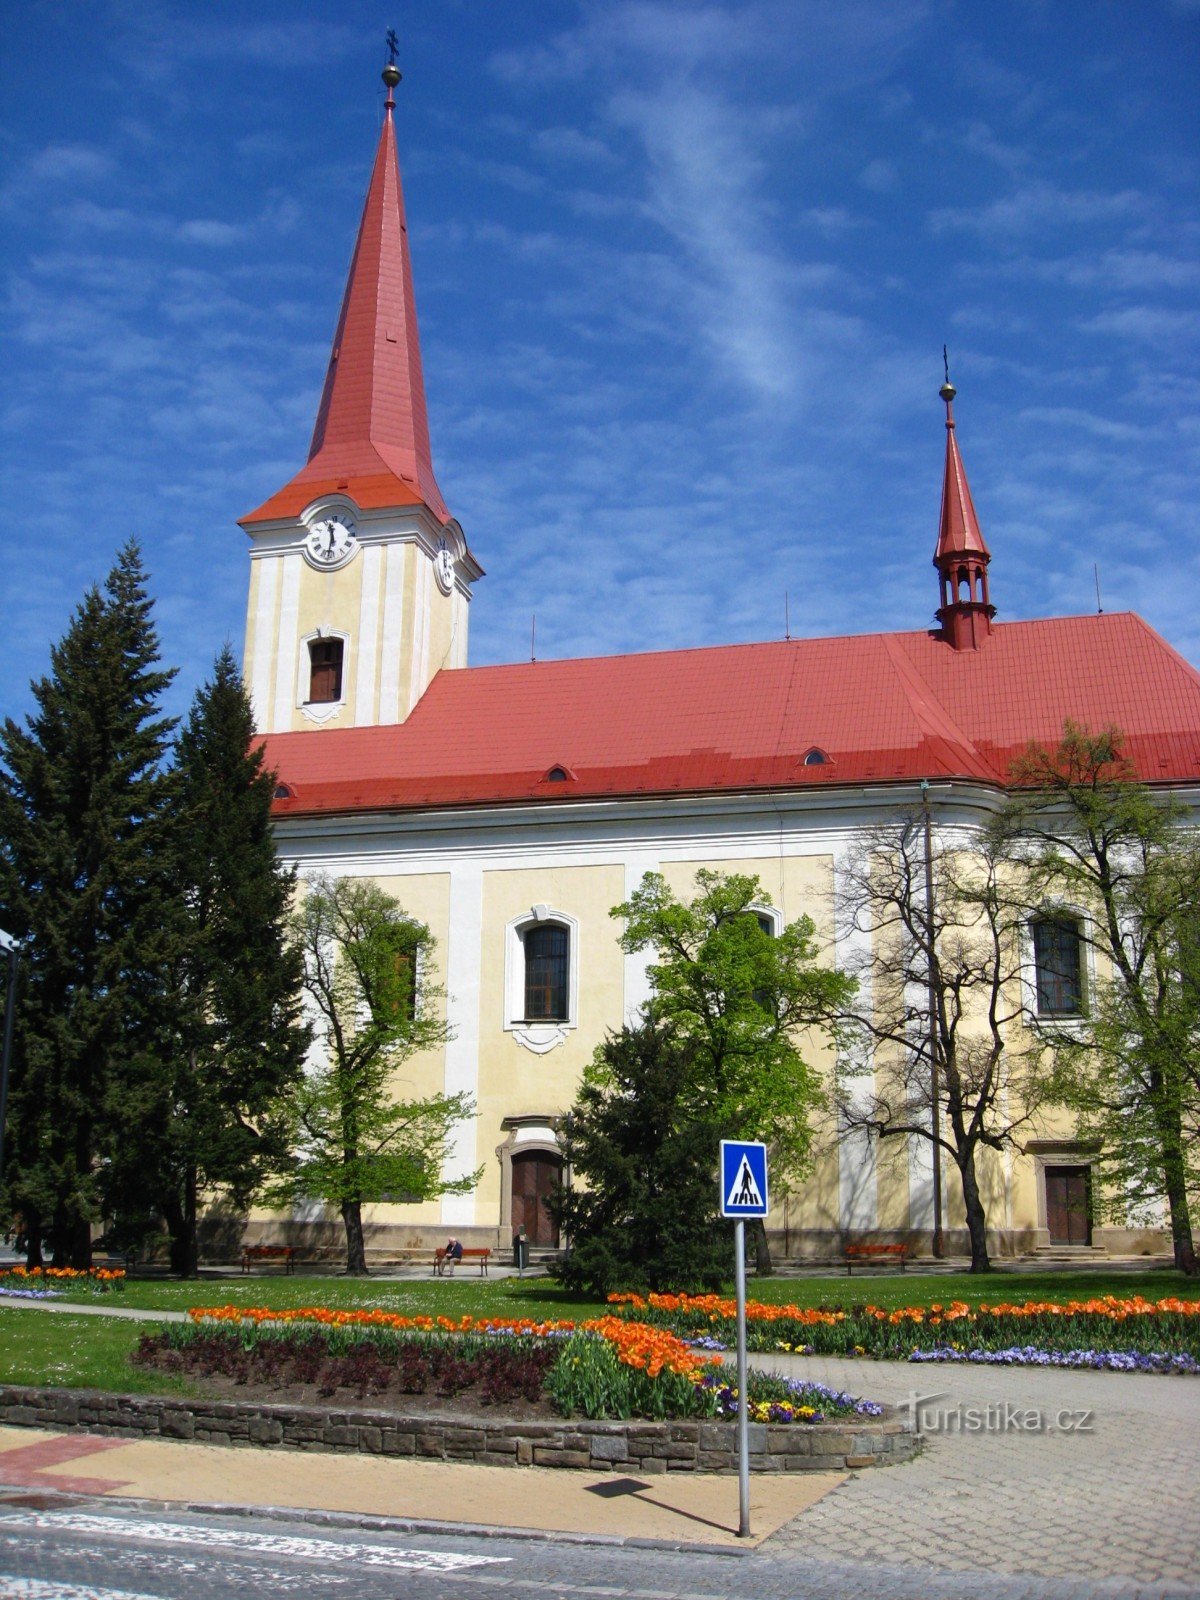 Pyhän kirkko Lilja